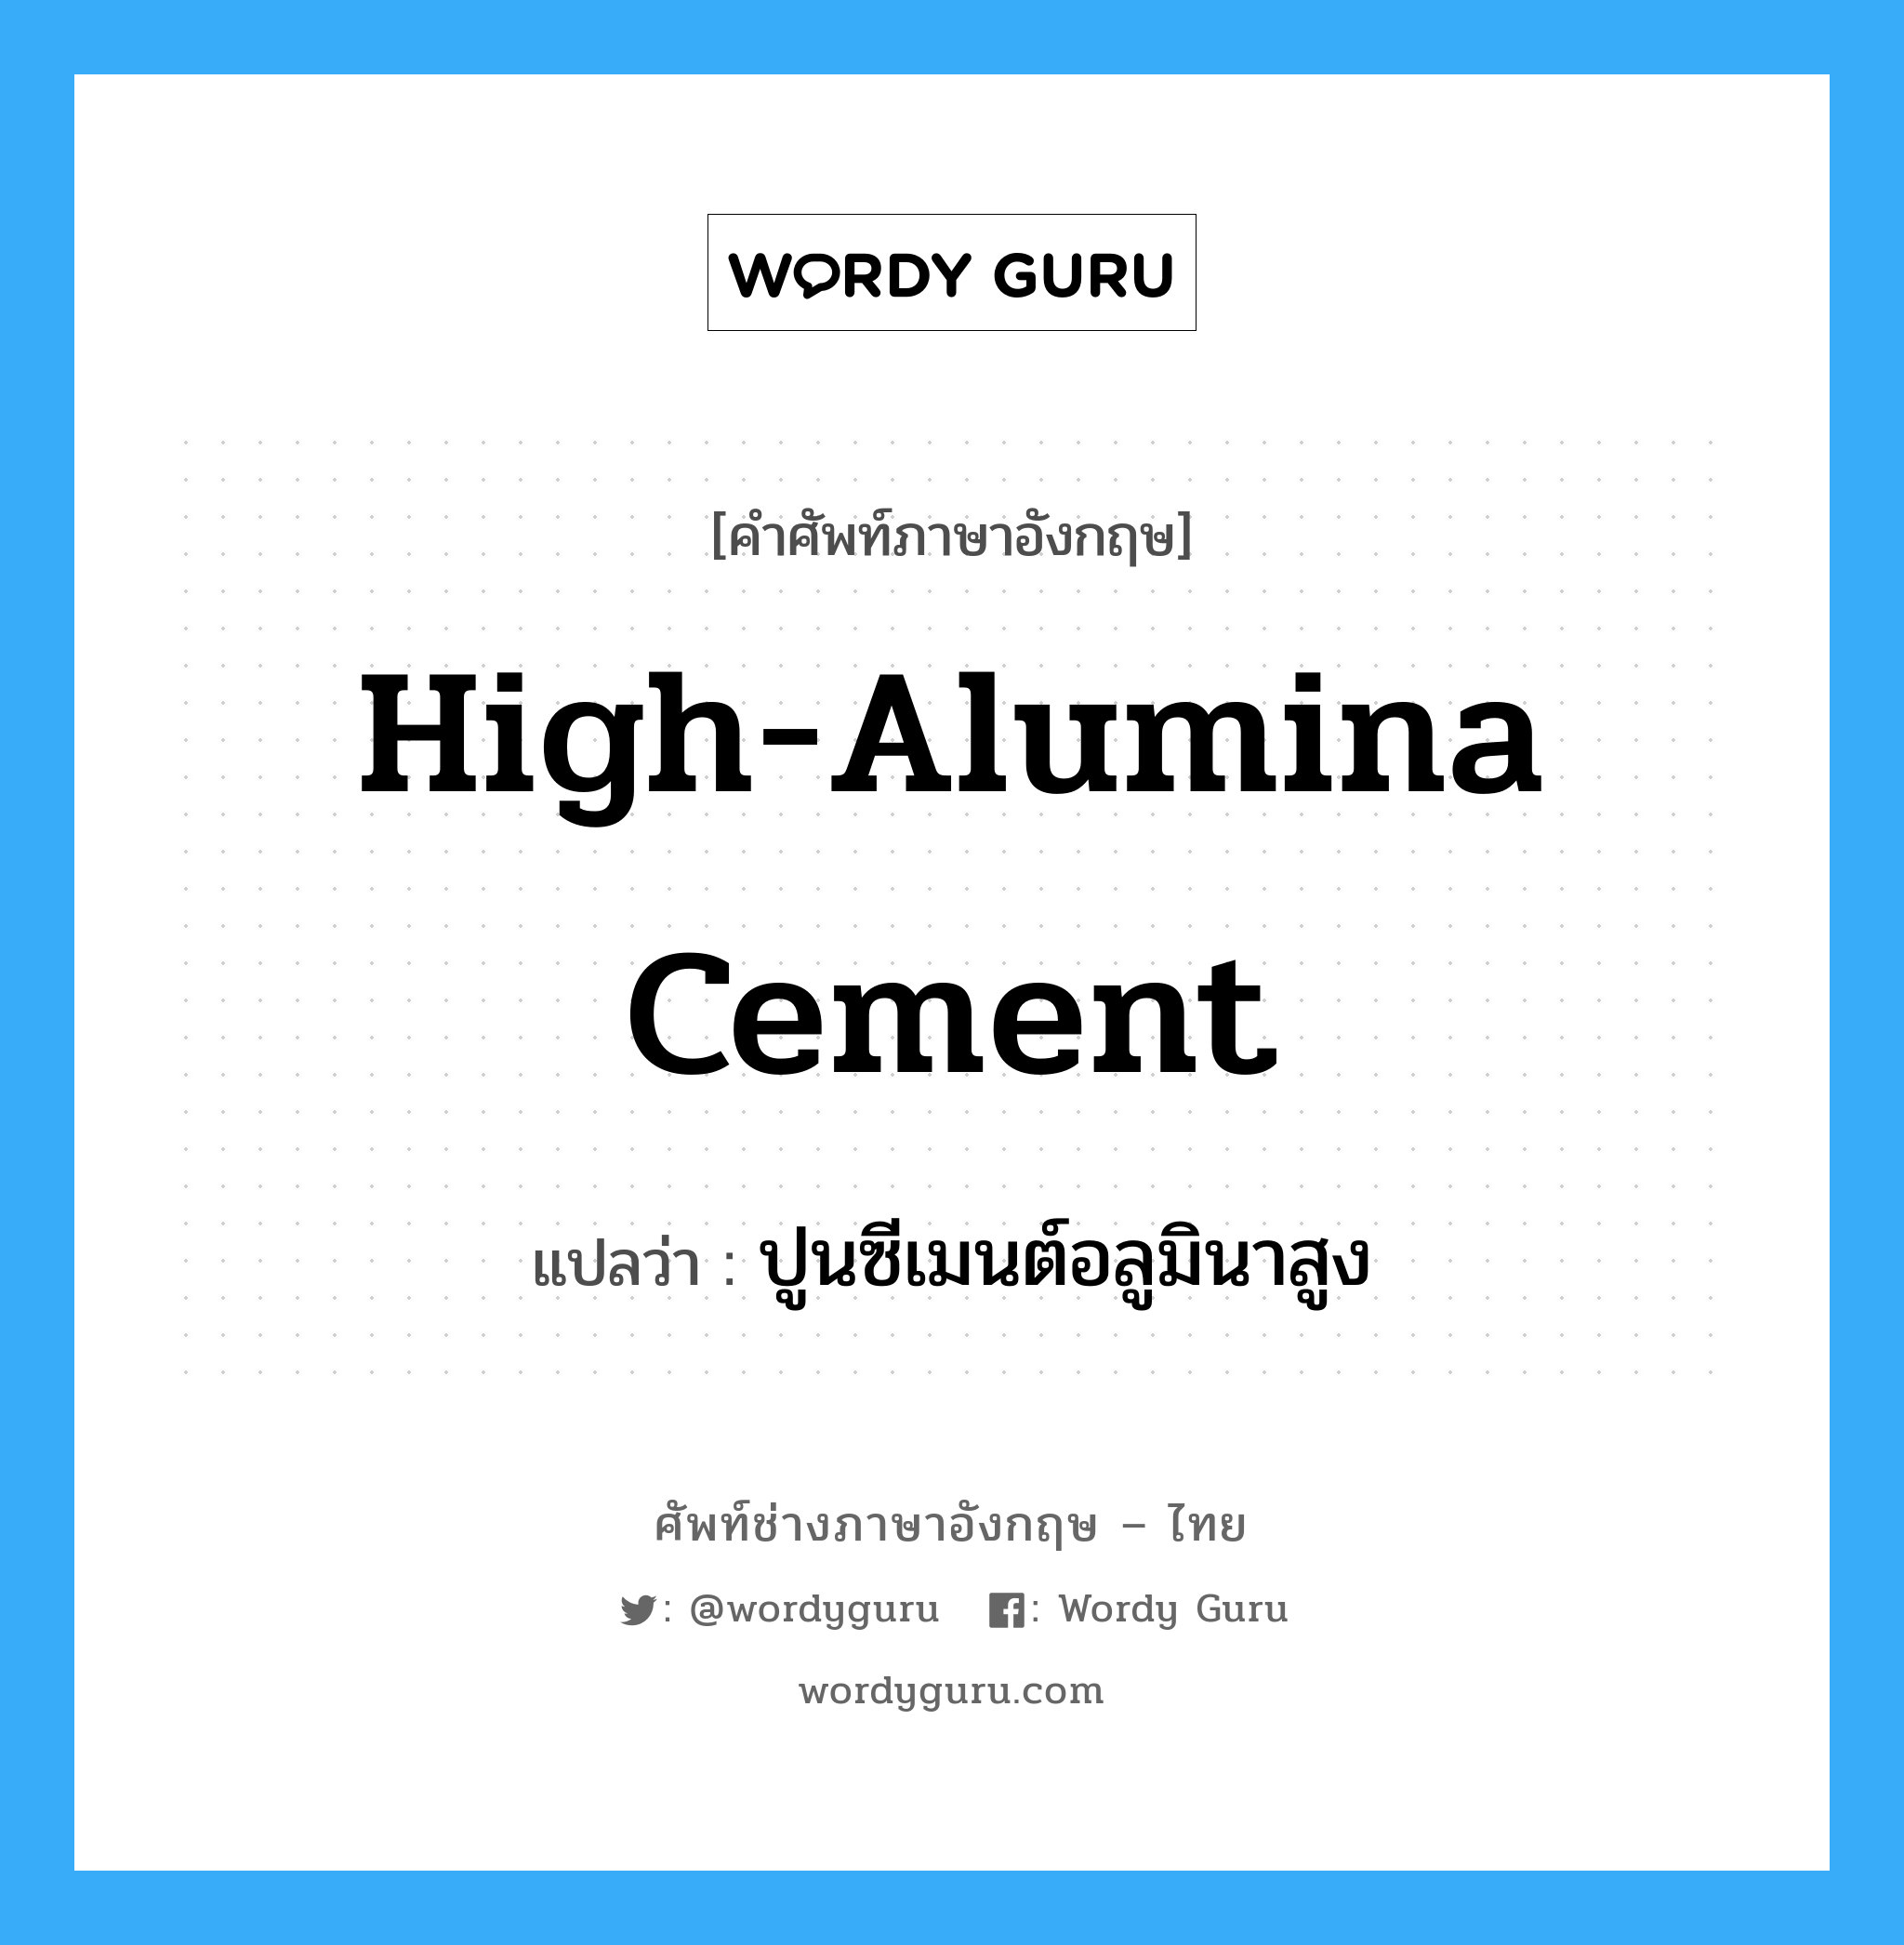 high-alumina cement แปลว่า?, คำศัพท์ช่างภาษาอังกฤษ - ไทย high-alumina cement คำศัพท์ภาษาอังกฤษ high-alumina cement แปลว่า ปูนซีเมนต์อลูมินาสูง